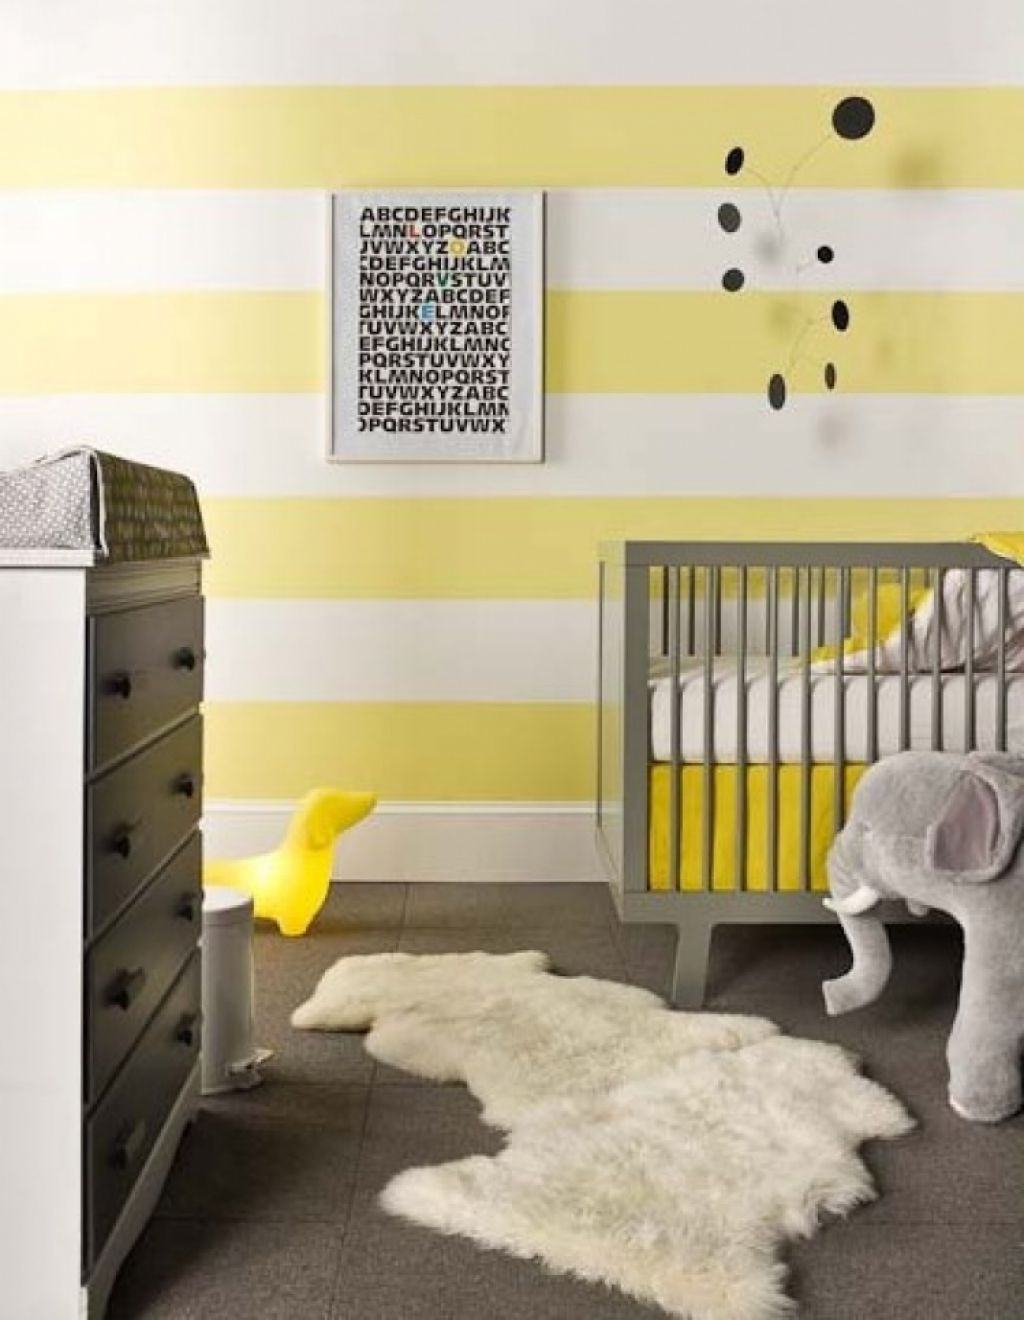 Le jaune peut apparaître sur les surfaces des chambres sous forme de papier peint ou d'autocollants.